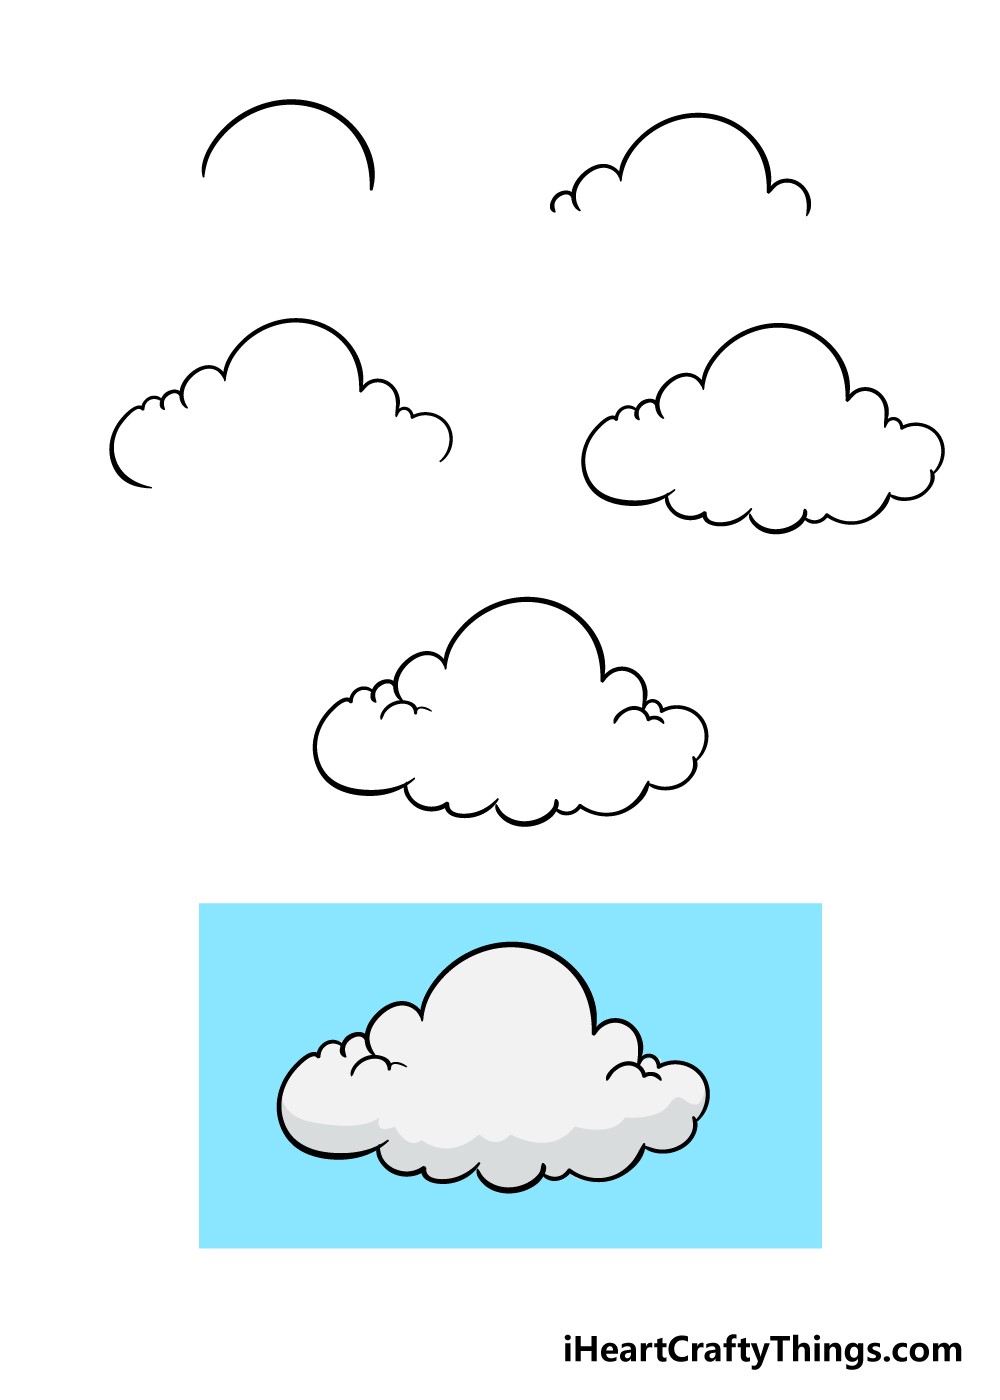 Cloud-Ideen 1 zeichnen ideen